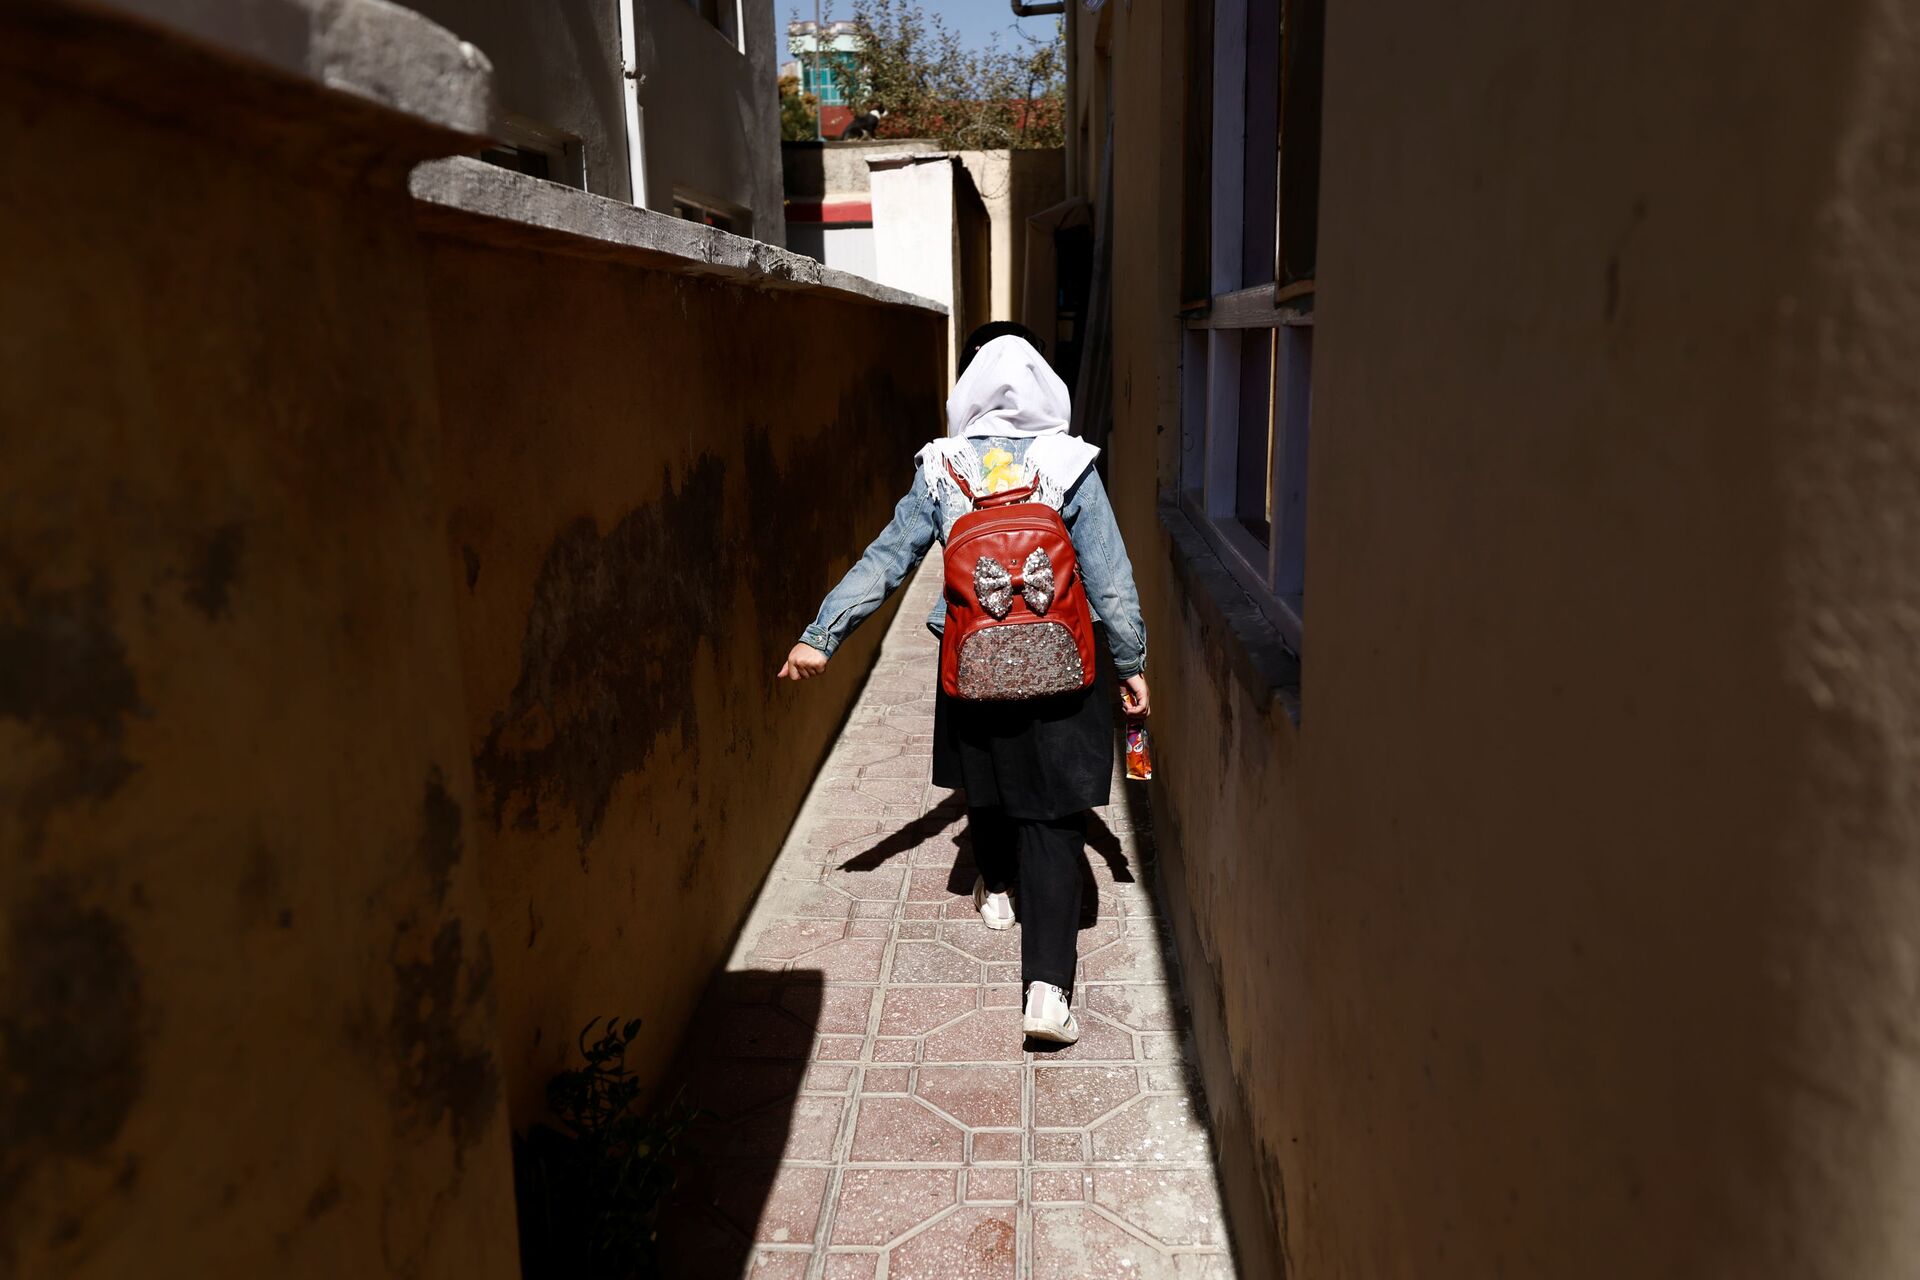 هادية، 10 أعوام، طالبة في الصف الرابع الابتدائي، تعود من المدرسة عبر زقاق بالقرب من منزلها في كابول، أفغانستان، 20 أكتوبر2021. - سبوتنيك عربي, 1920, 23.11.2021